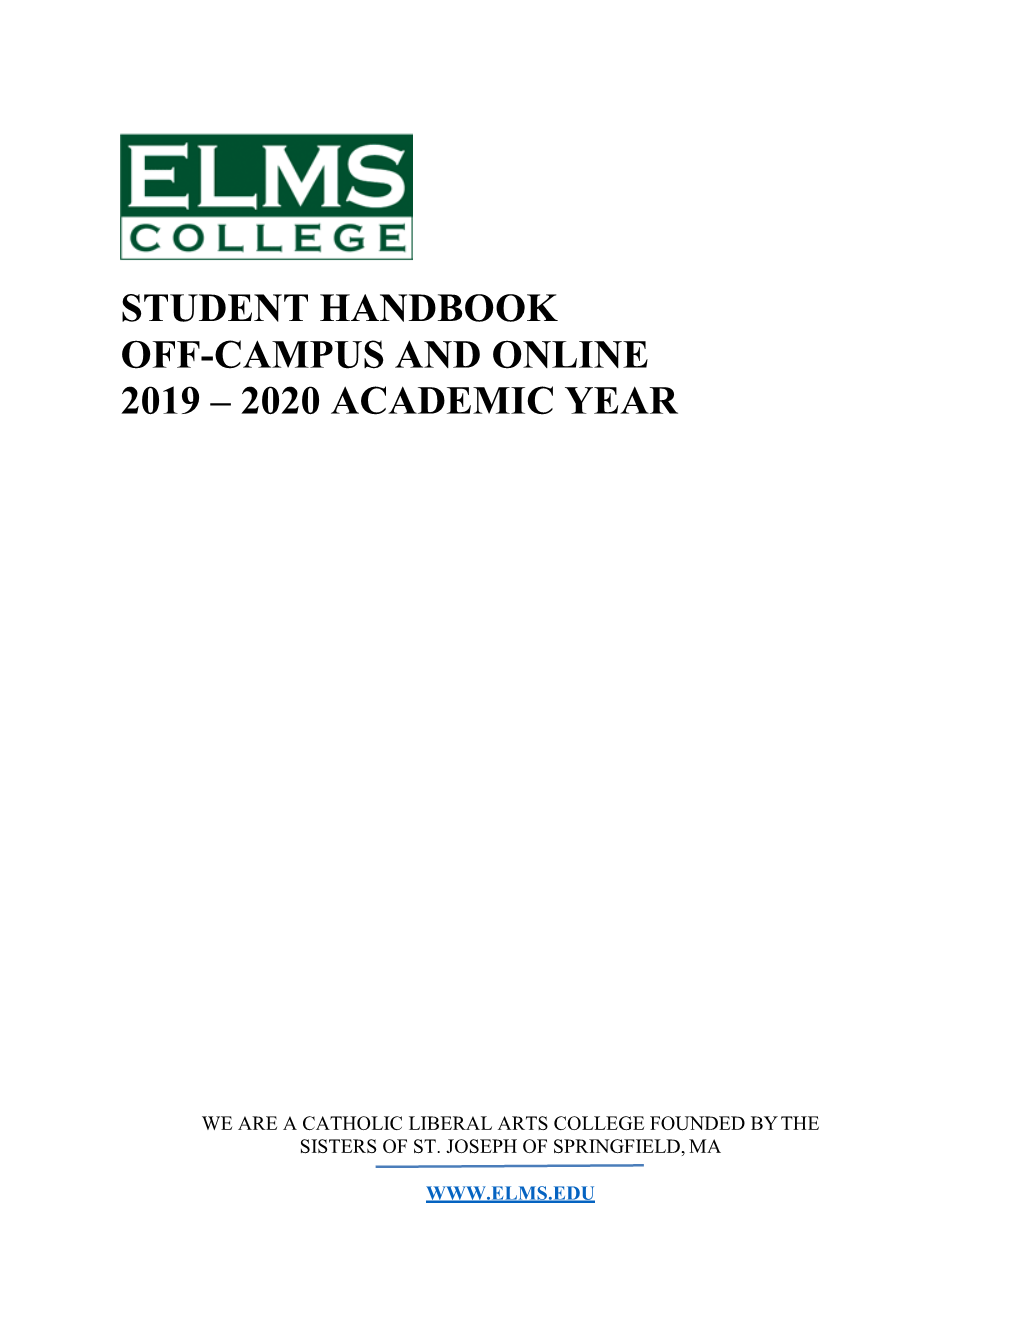 Off-Campus/Online Student Handbook